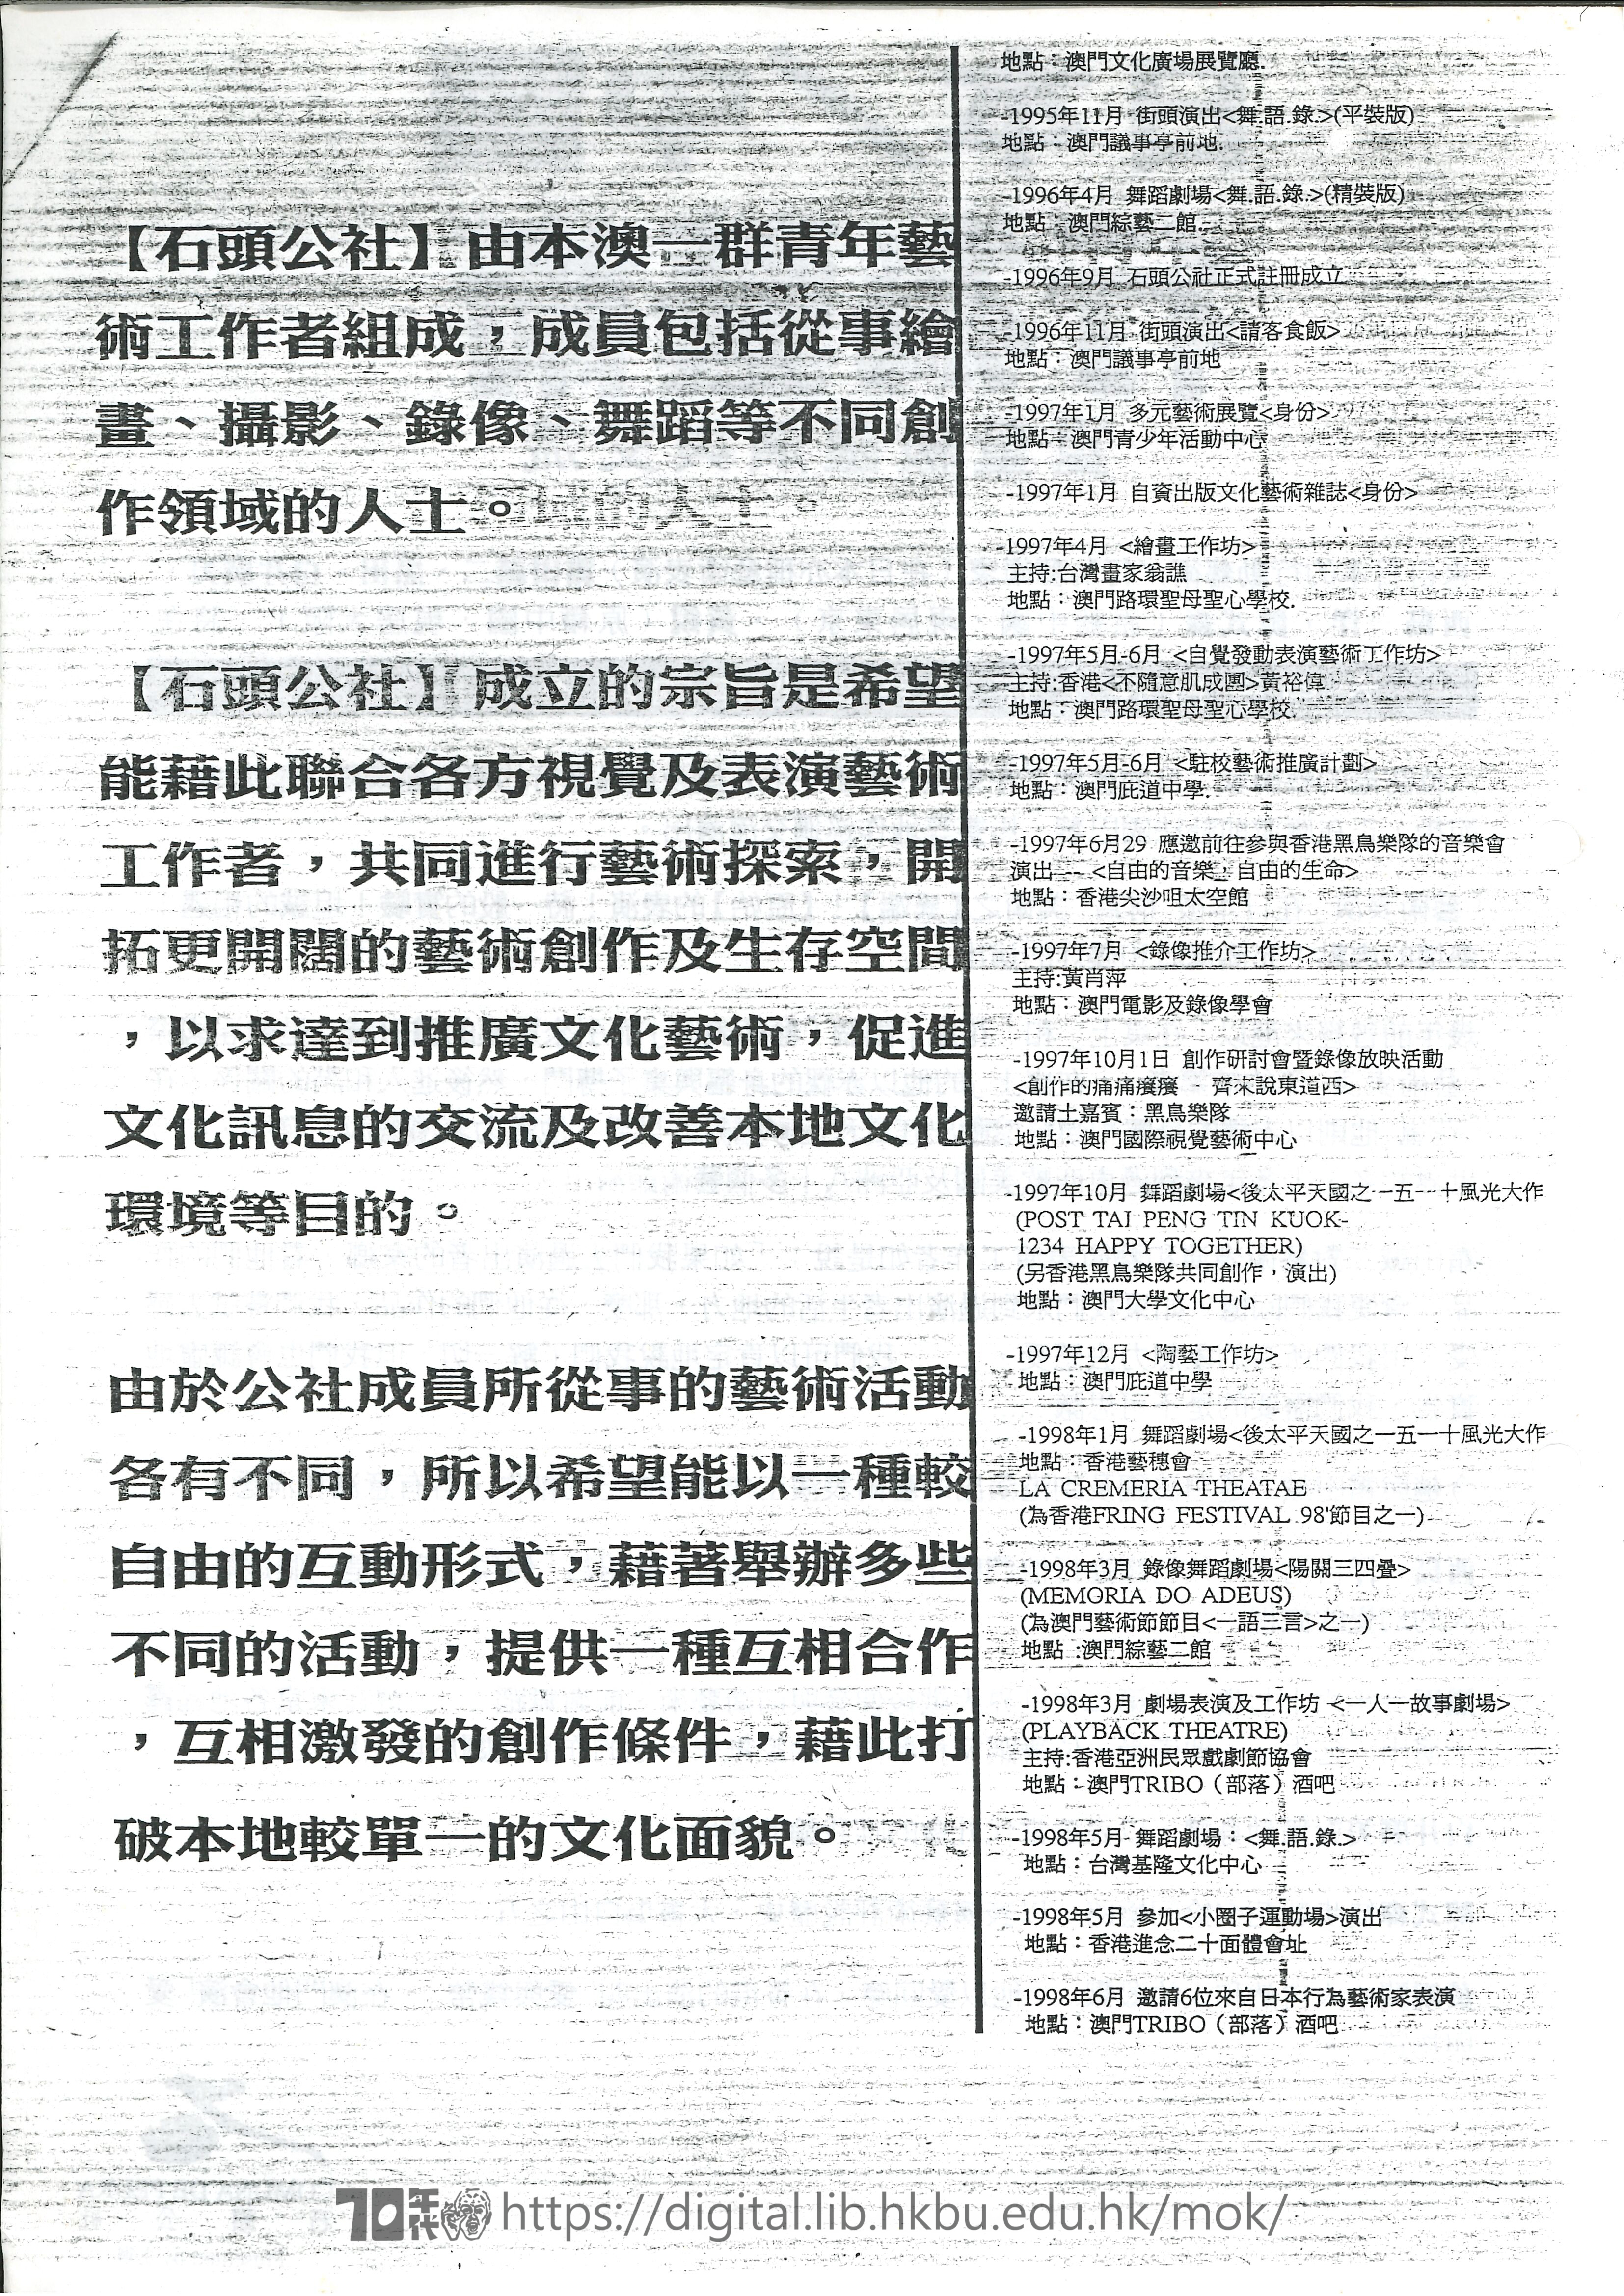 行為藝術  日本/中國行爲藝術重量級匯演與交流  宣傳單張  